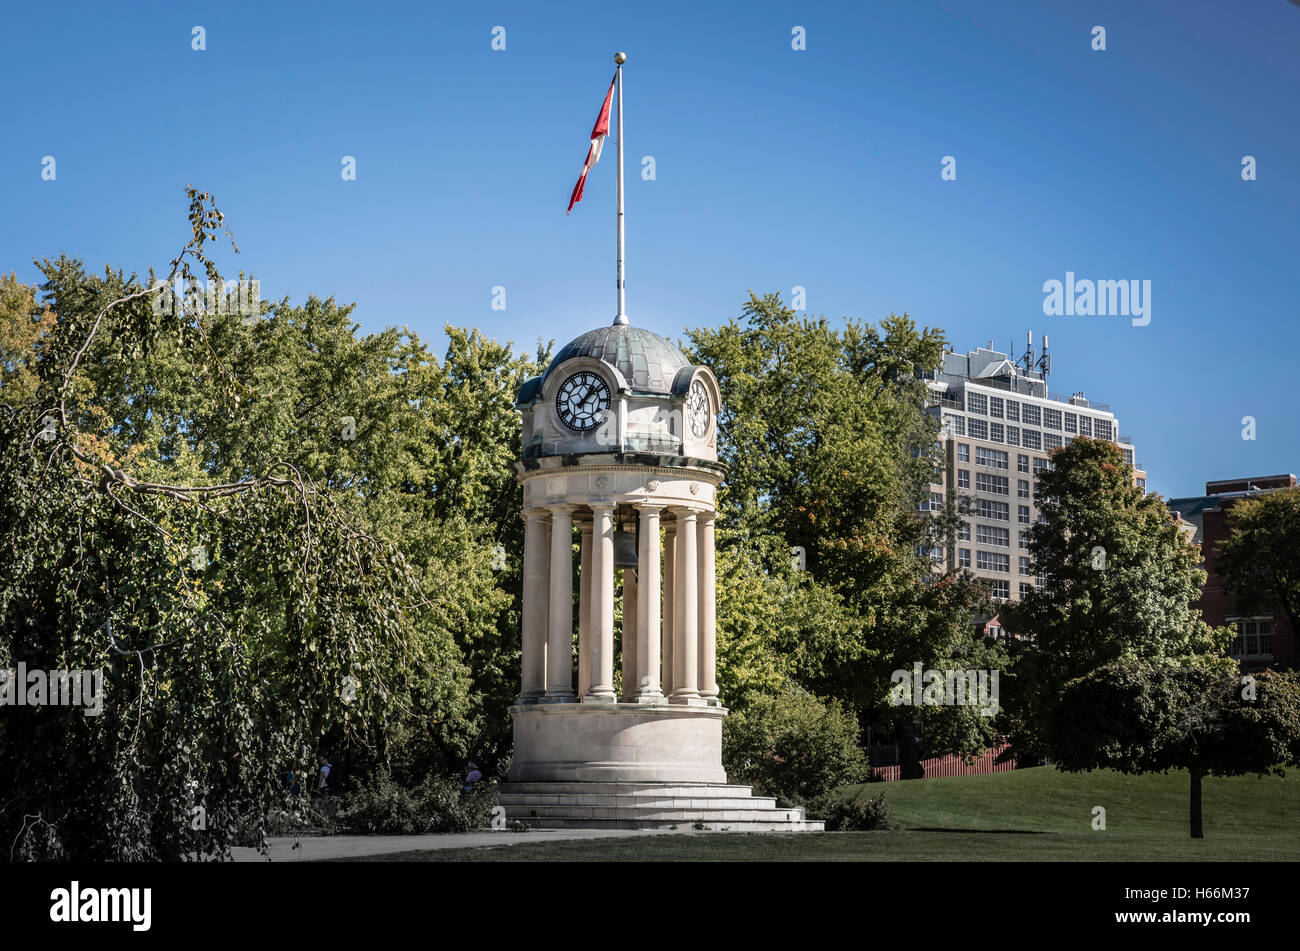 Tour de l'horloge dans le parc Victoria, Kitchener Canada Banque D'Images